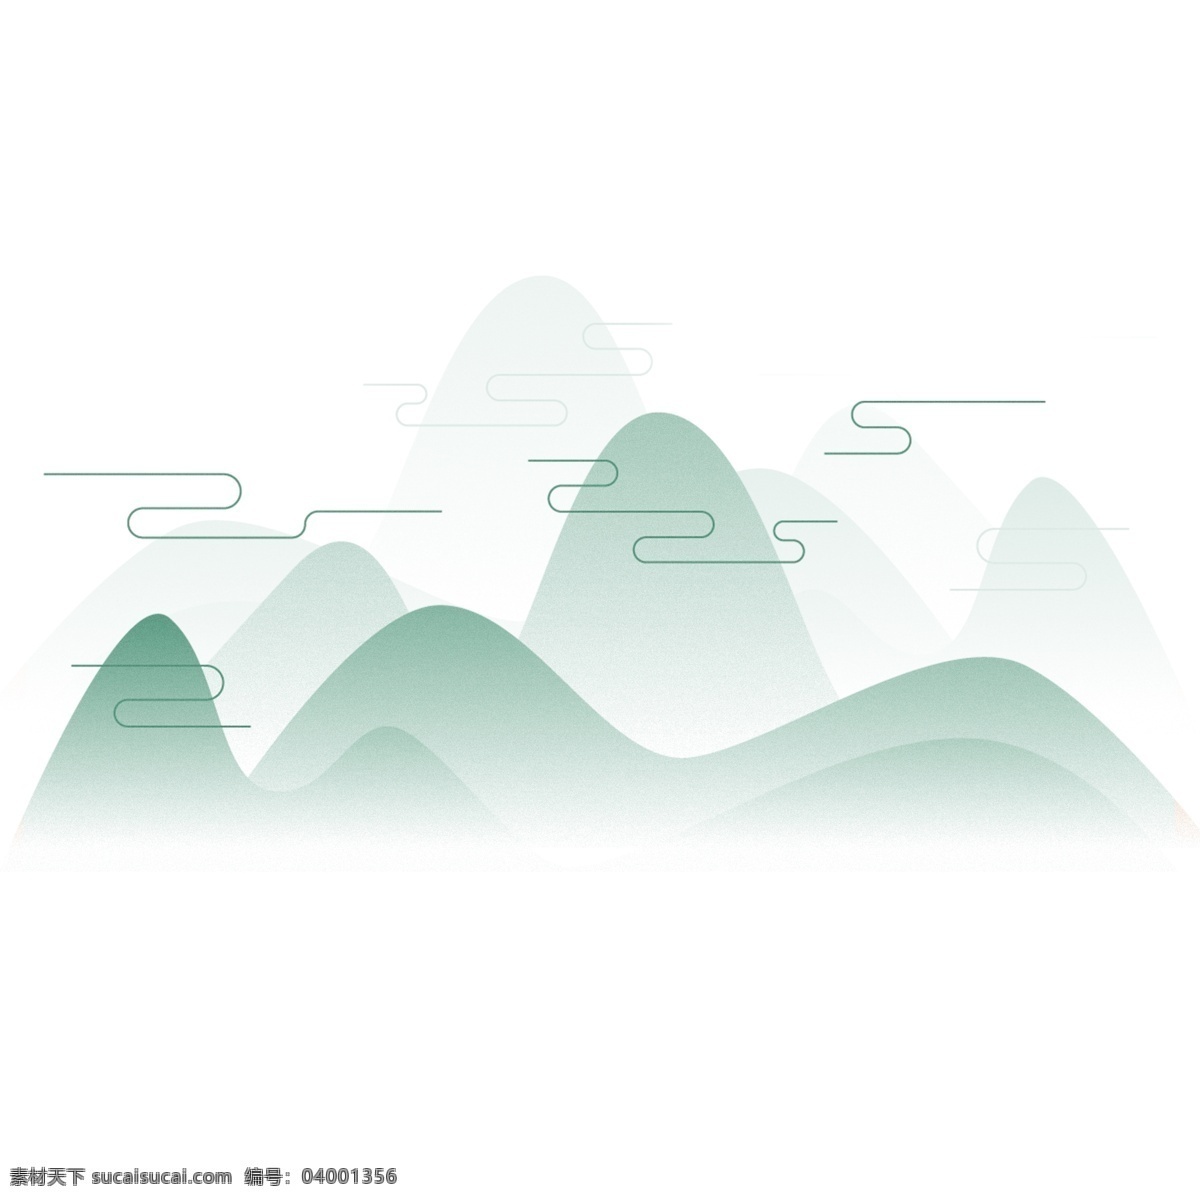 初春 春季 绿色 山峰 手绘 插画 简约 简单 云纹 线条 文化 唯美 大方 大气 自然风景